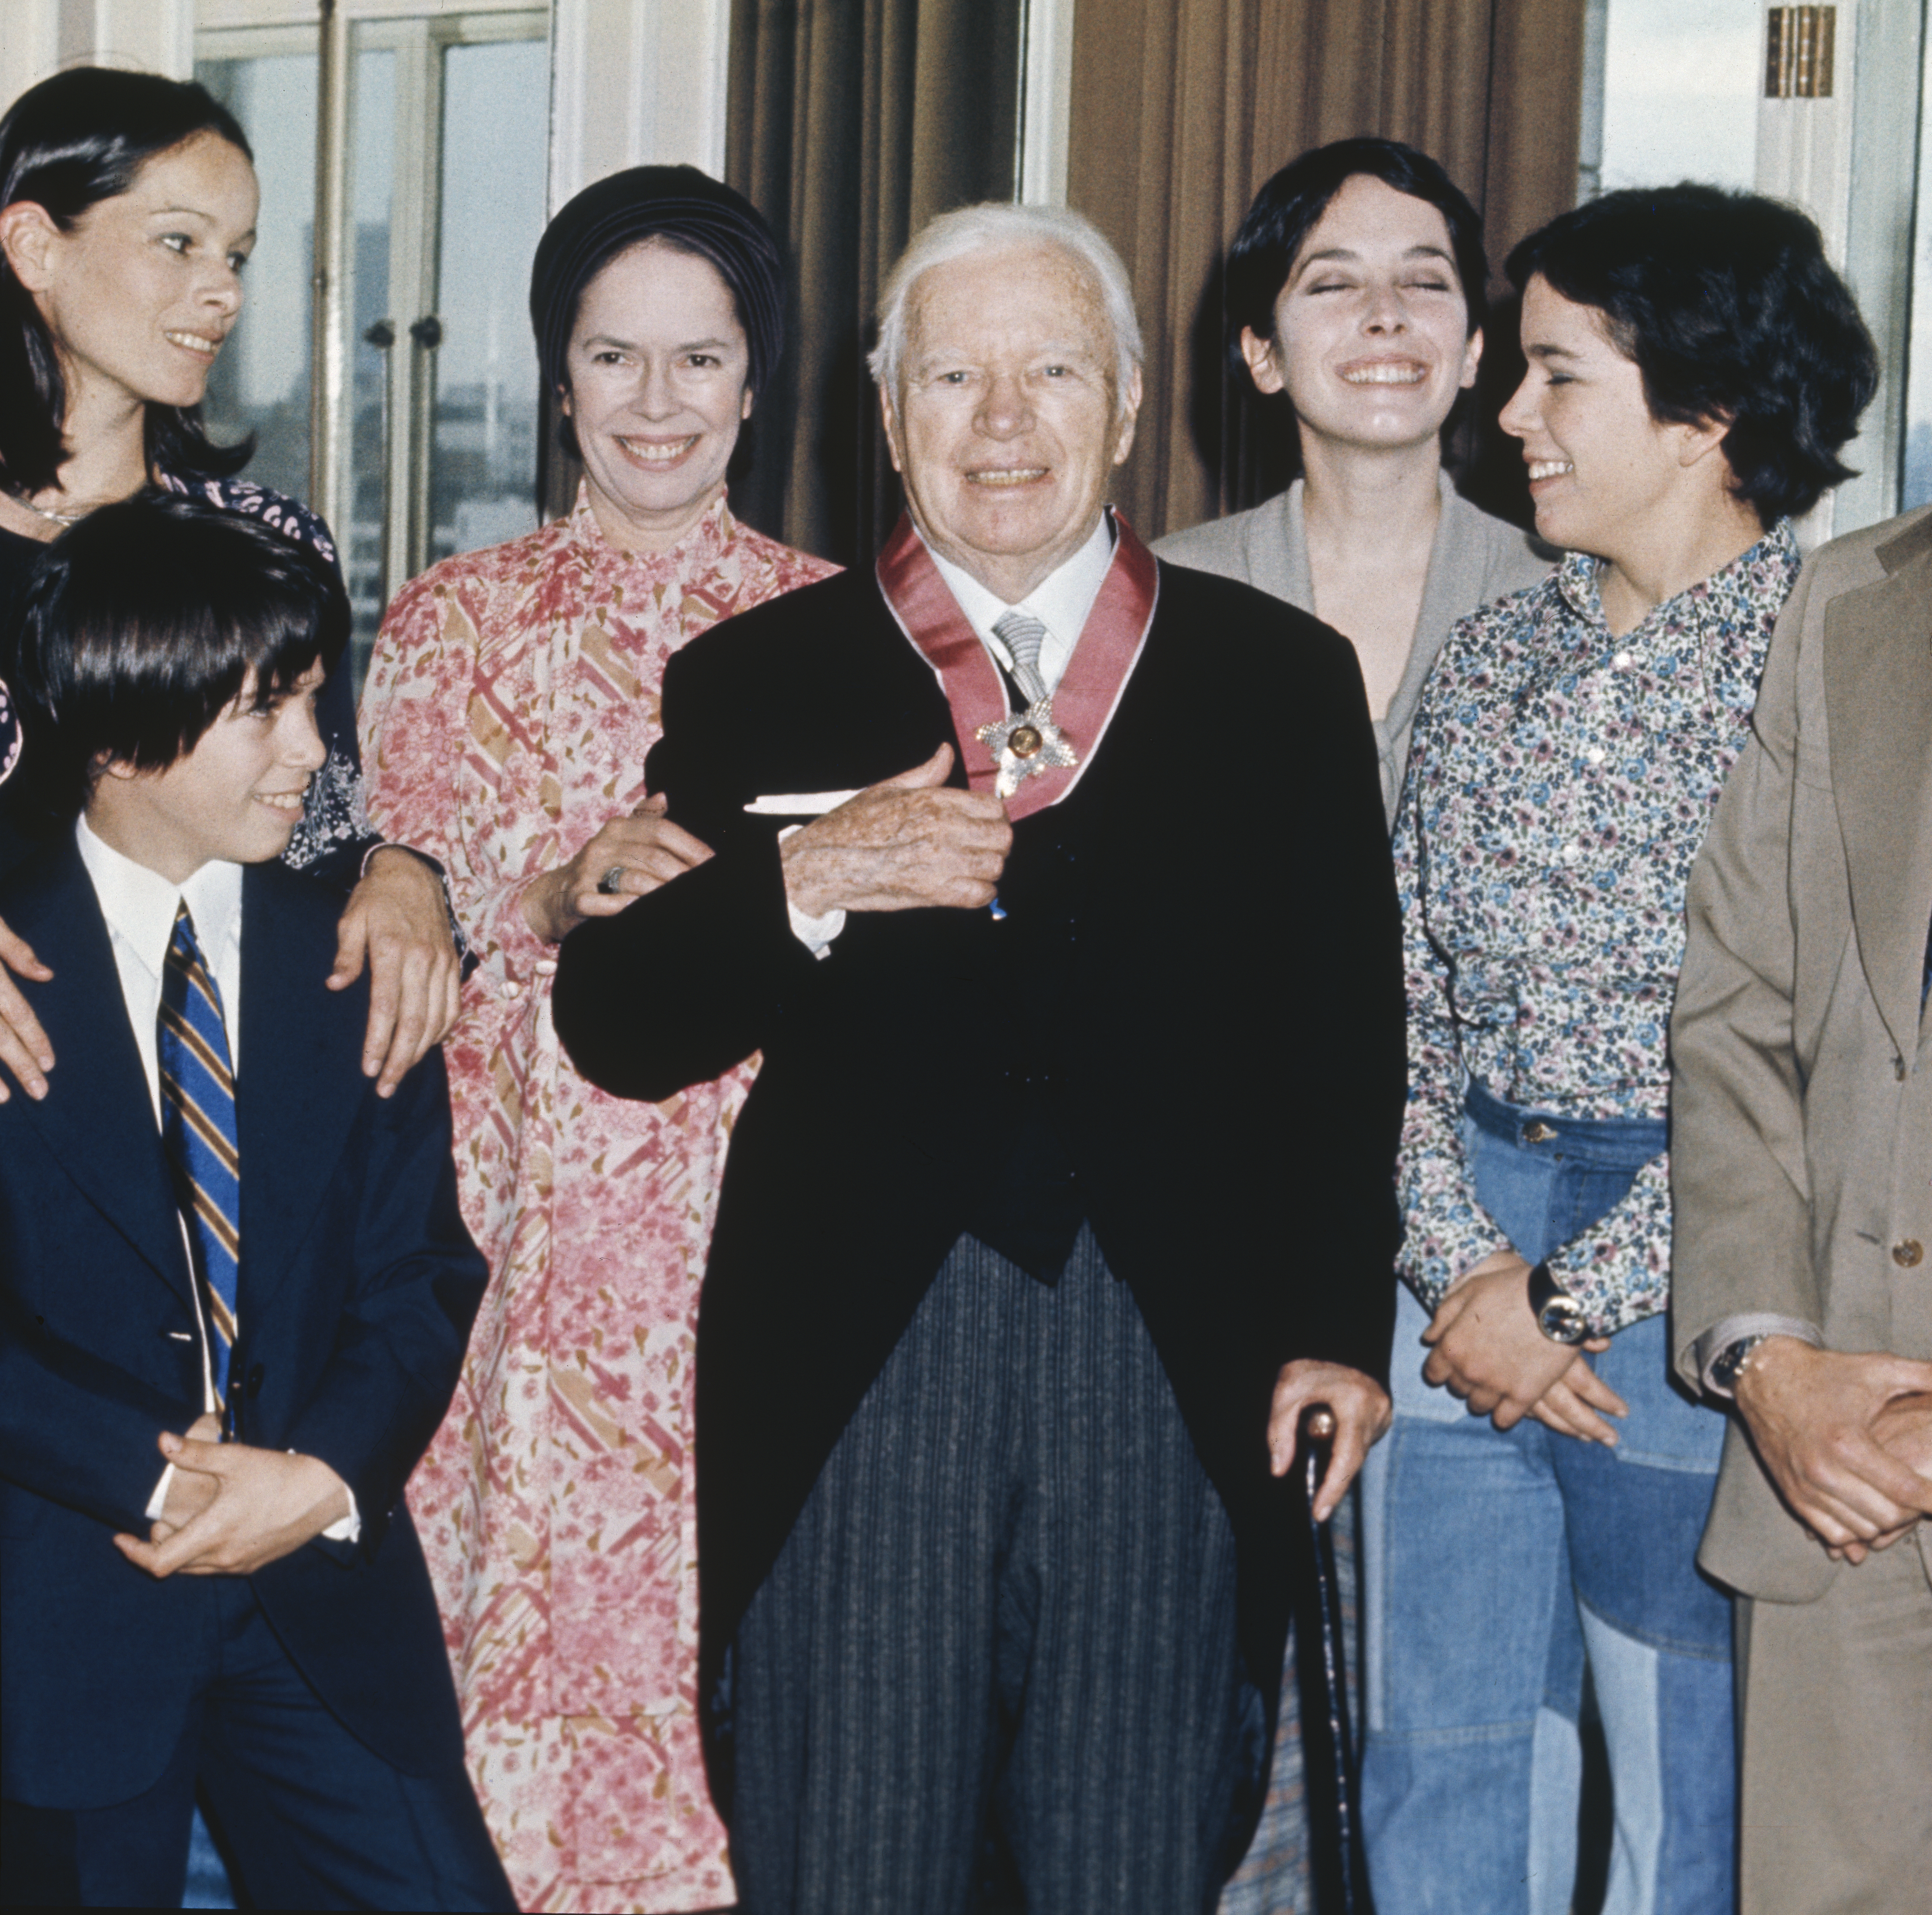 El director Sir Charlie Chaplin con su familia en el Hotel Savoy tras recibir una KBE, el 4 de marzo de 1975 en Londres. | Foto: Getty Images